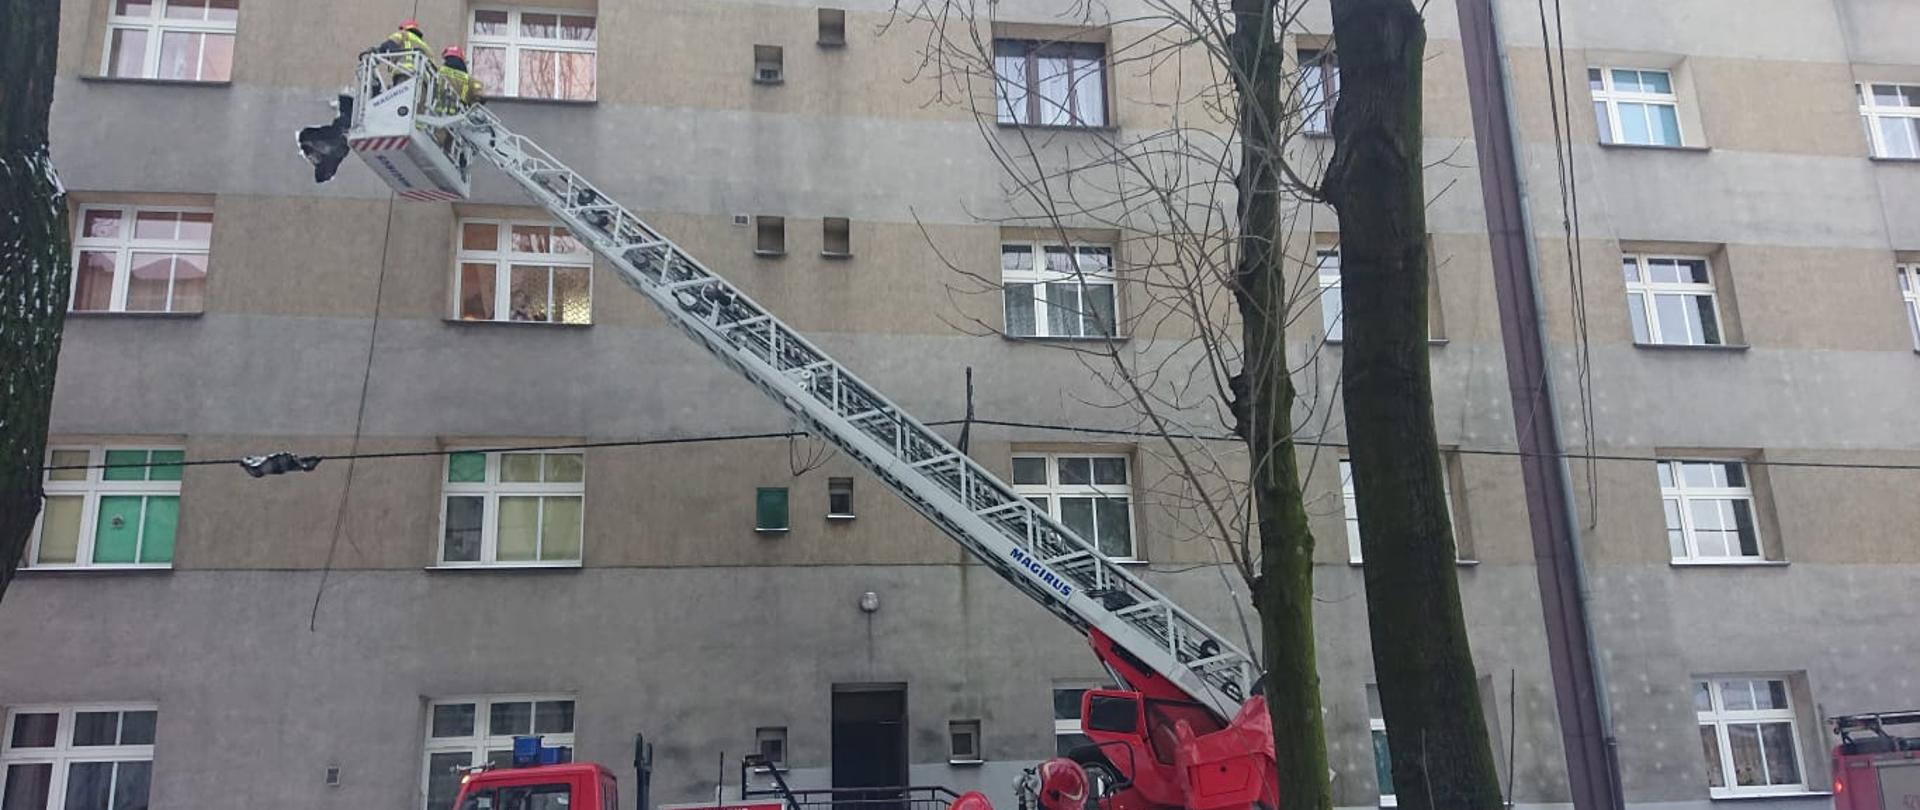 Zdjęcie przedstawia samochód pożarniczy z drabiną mechaniczną na tle budynku oraz strażaków usuwających nadpaloną elewację budynku 